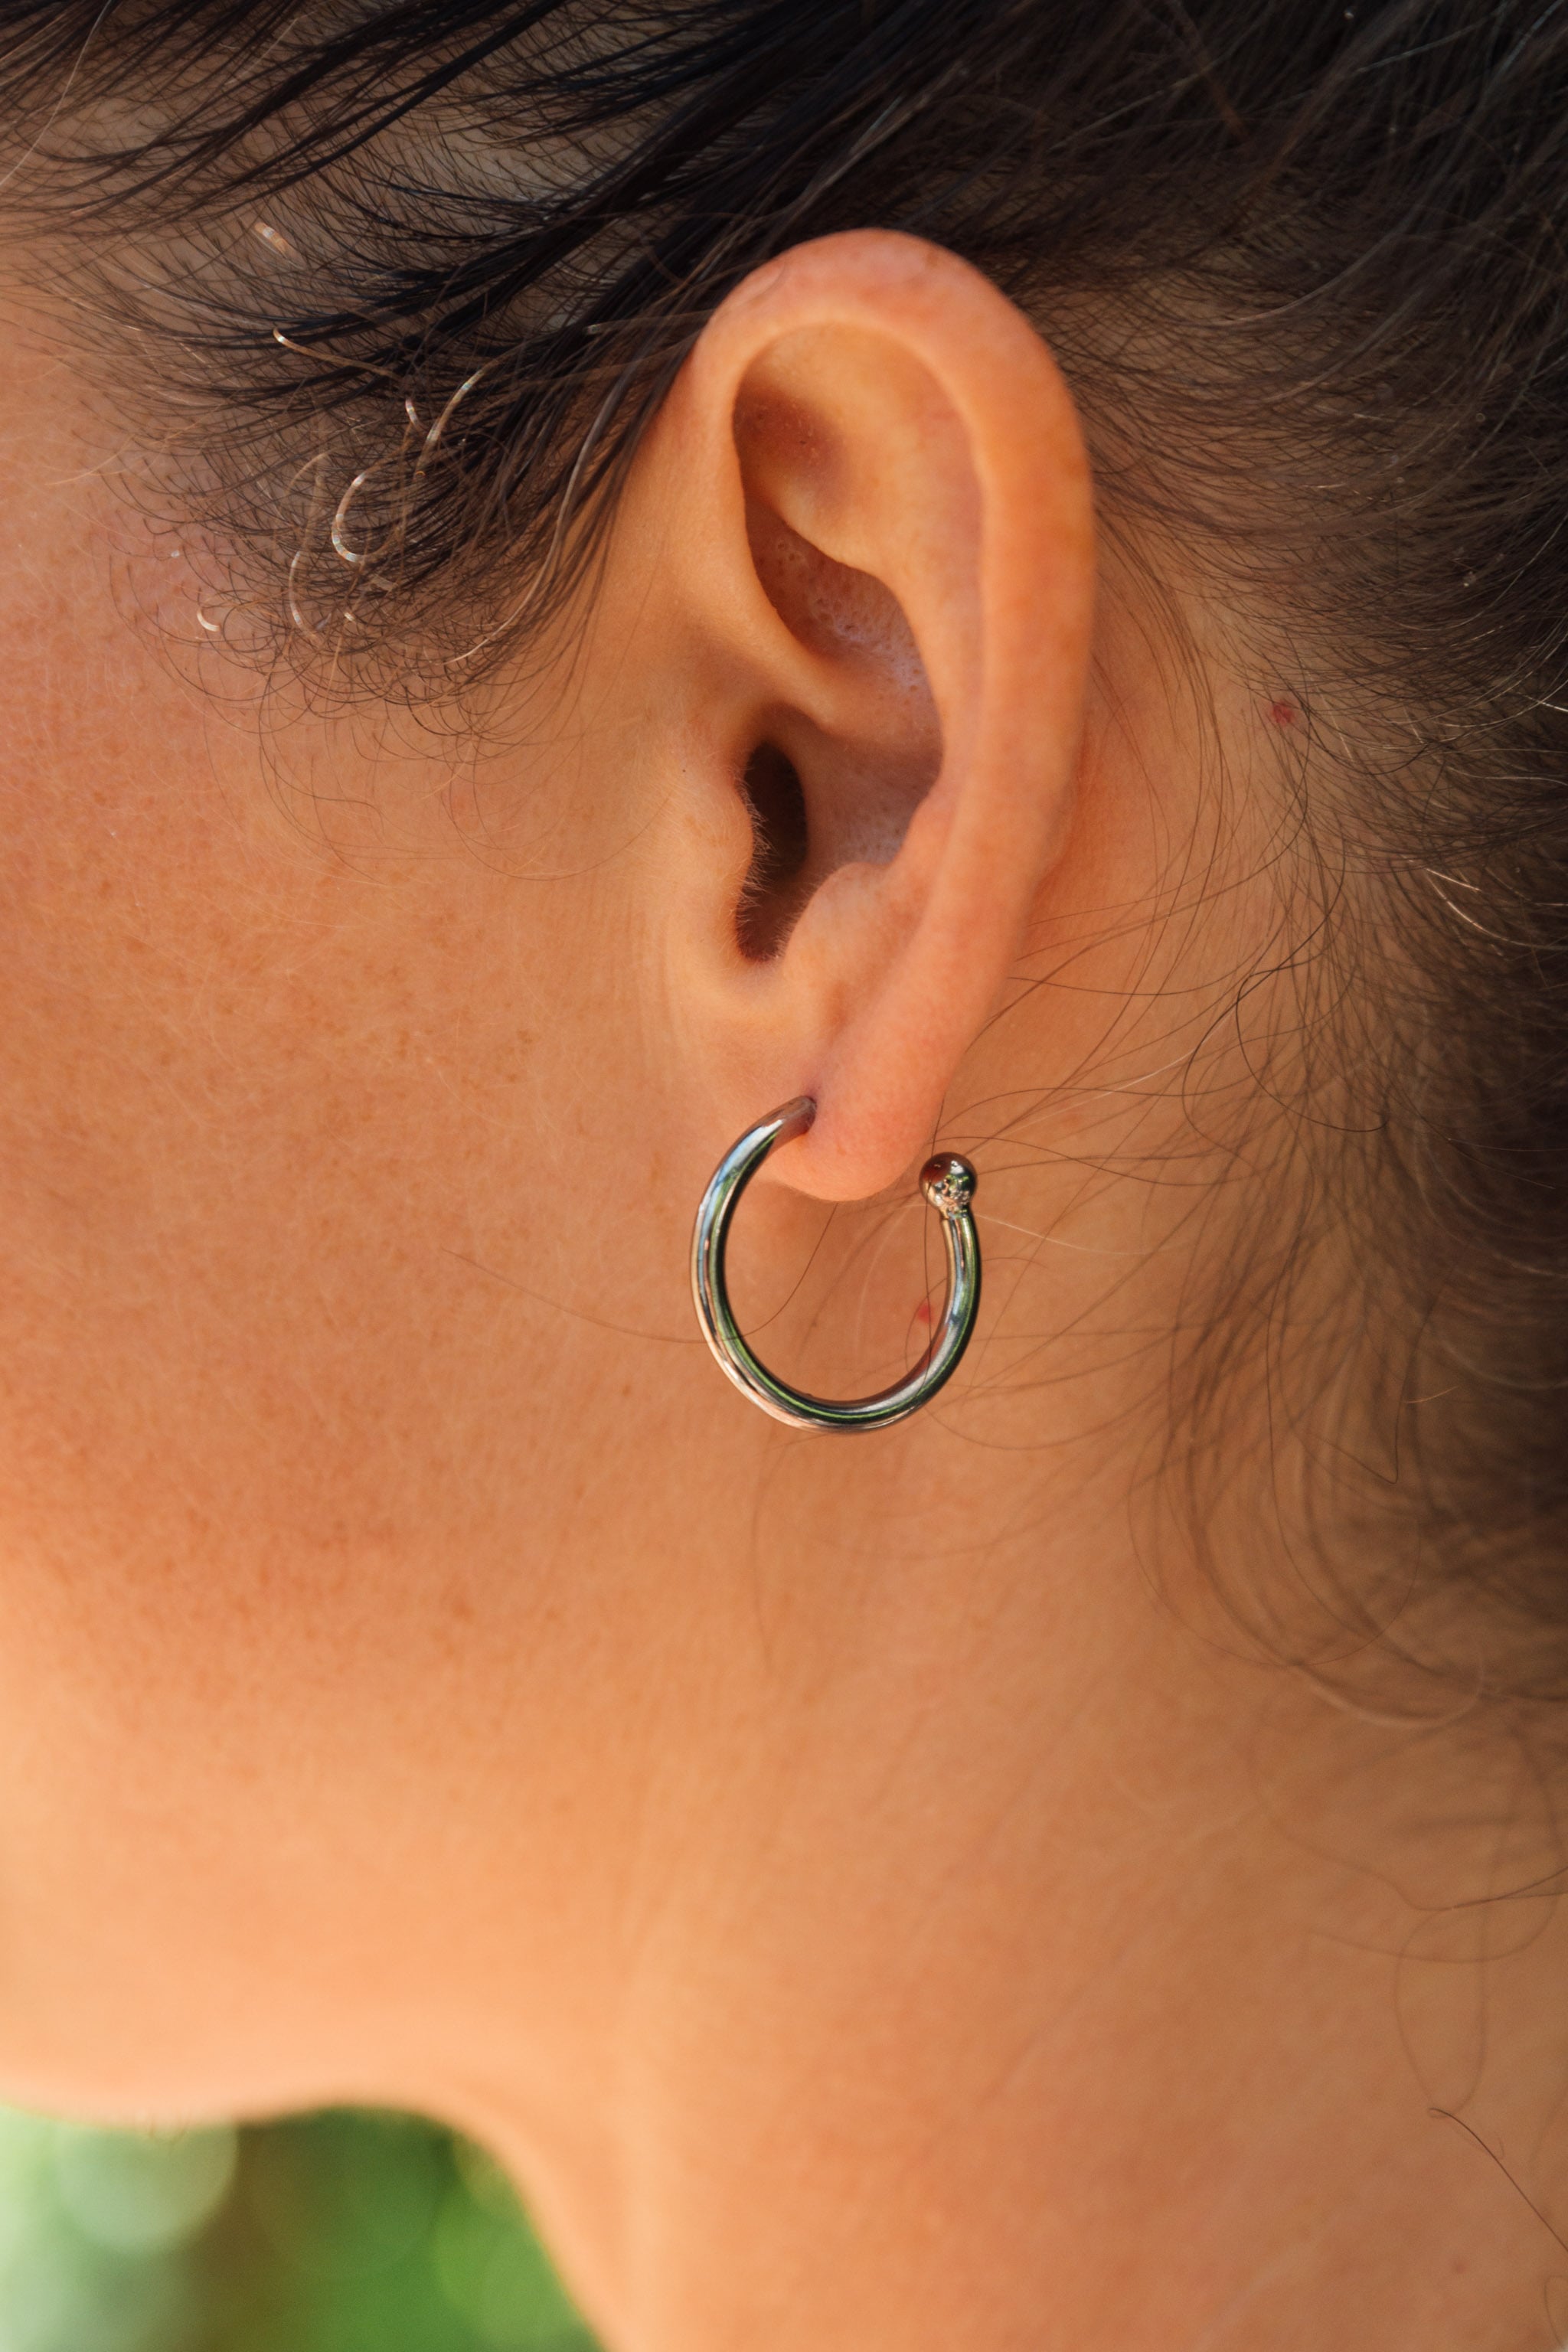 Die "Ohrringallergie": Ein Leitfaden für Menschen mit Kontaktallergien